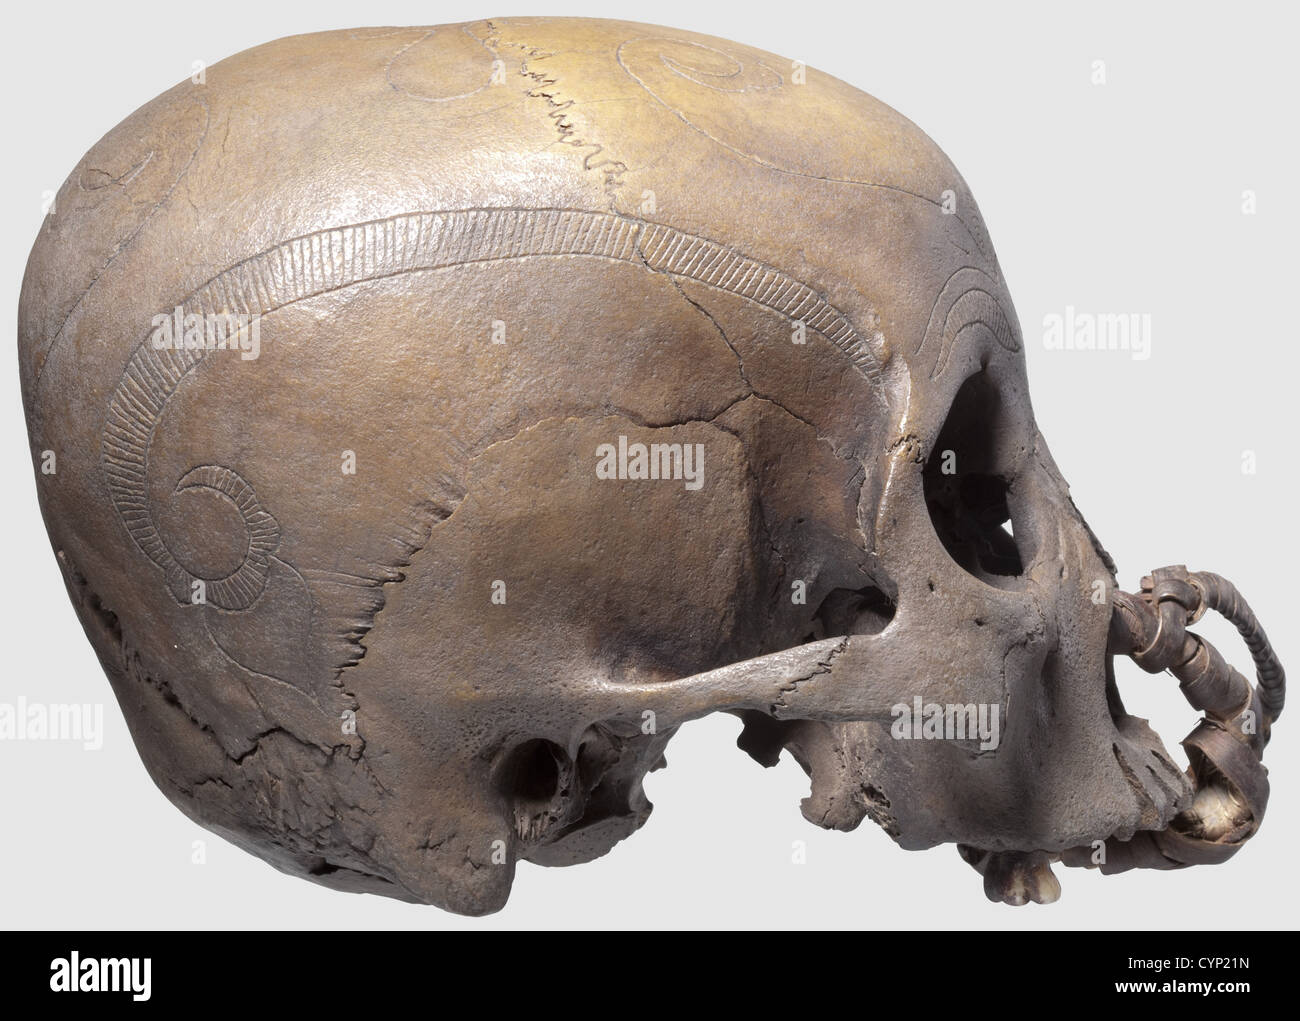 Eine Schädeltrophäe des Kayan Stammes, Borneo. Ornamental gravierter Schädel fehlt der Unterkiefer, mit doppeltem Ring aus Rattannetz um den palatin Knochen und die Nasenlöcher. Der ganze Schädel hat eine helle, gleichmäßige Patina, deutliche Altersspuren an den Gesichtsknochen und den Schläfenknochen. Höhe 13 cm. Mittels der kunstvoll geflochtenen Rattanringe wurden die Schädeltrophäen einzeln oder als Bündel im Herrenhaus des Stammes aufgehängt. Herkunft: Aus einer belgischen Privatsammlung,historisch,historisch,Menschen,indonesischer Archipel,Indonesien,Ferner Osten,Asi,Additional-Rights-Clearences-nicht verfügbar Stockfoto